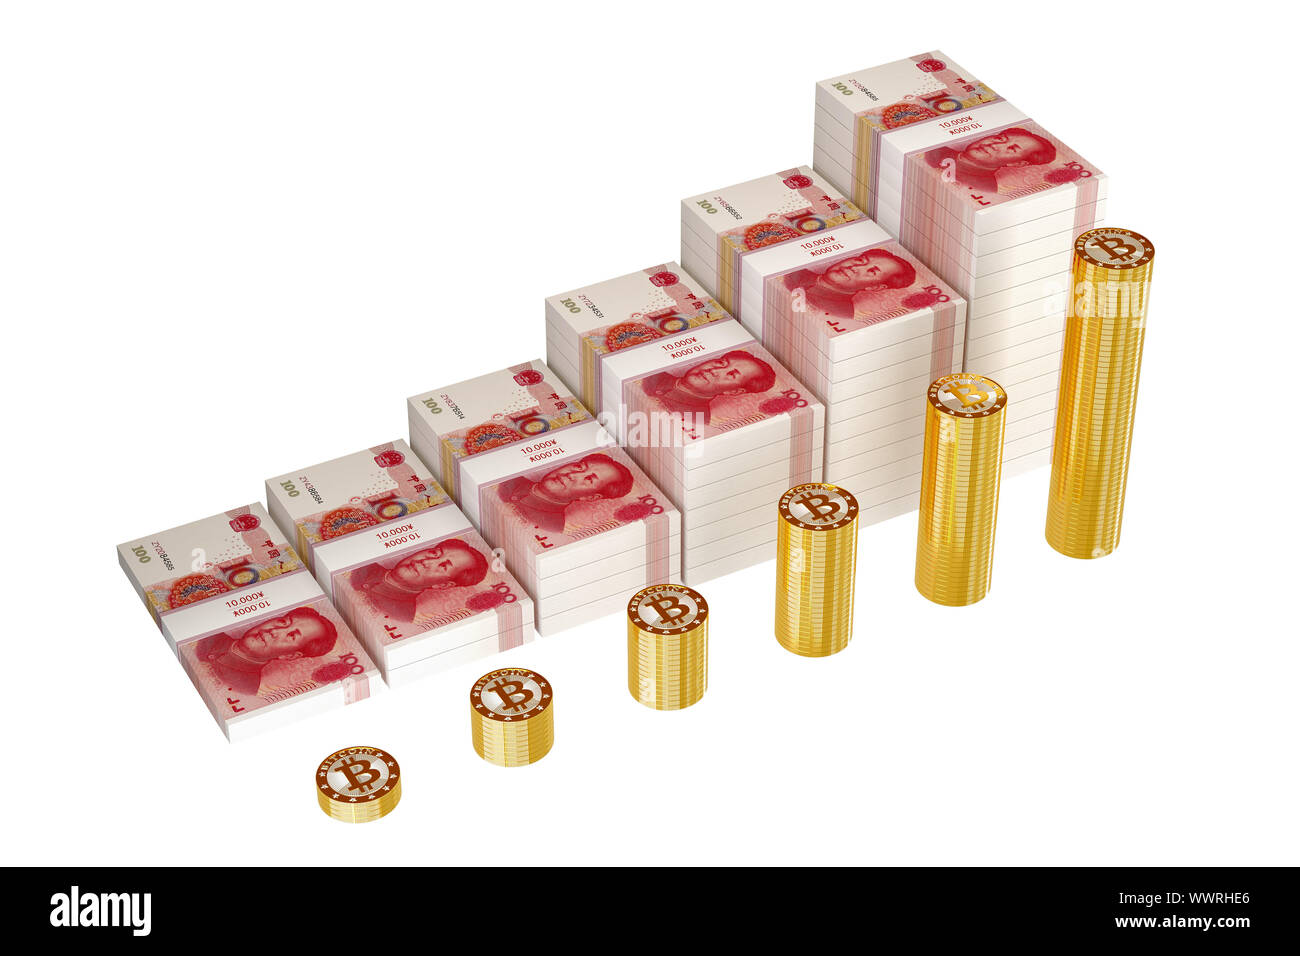 Bitcoins und Yuan Balkendiagramm - Gewinn steigern - 3D-Rendering Stockfoto